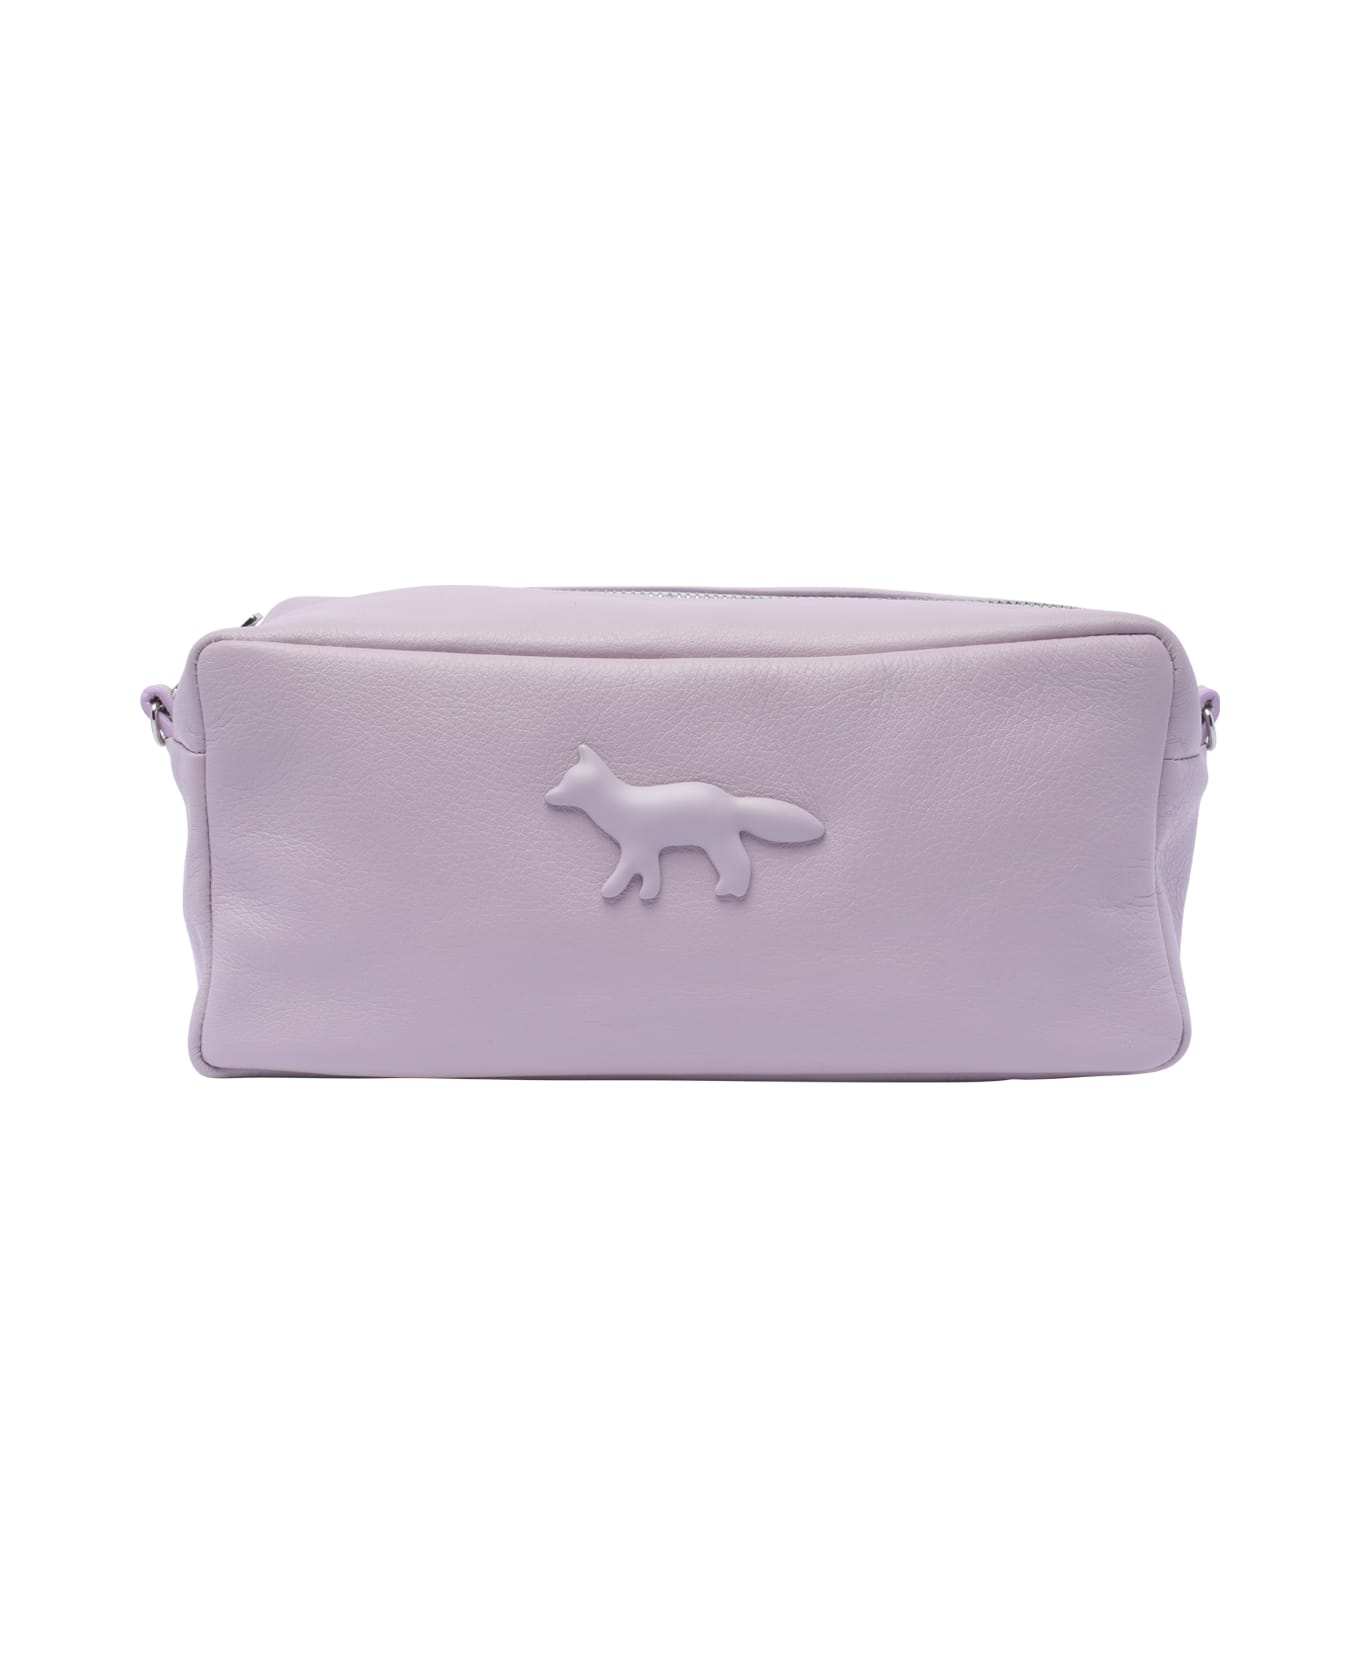 Maison Kitsuné Cloud Trousse Bag - Purple クラッチバッグ